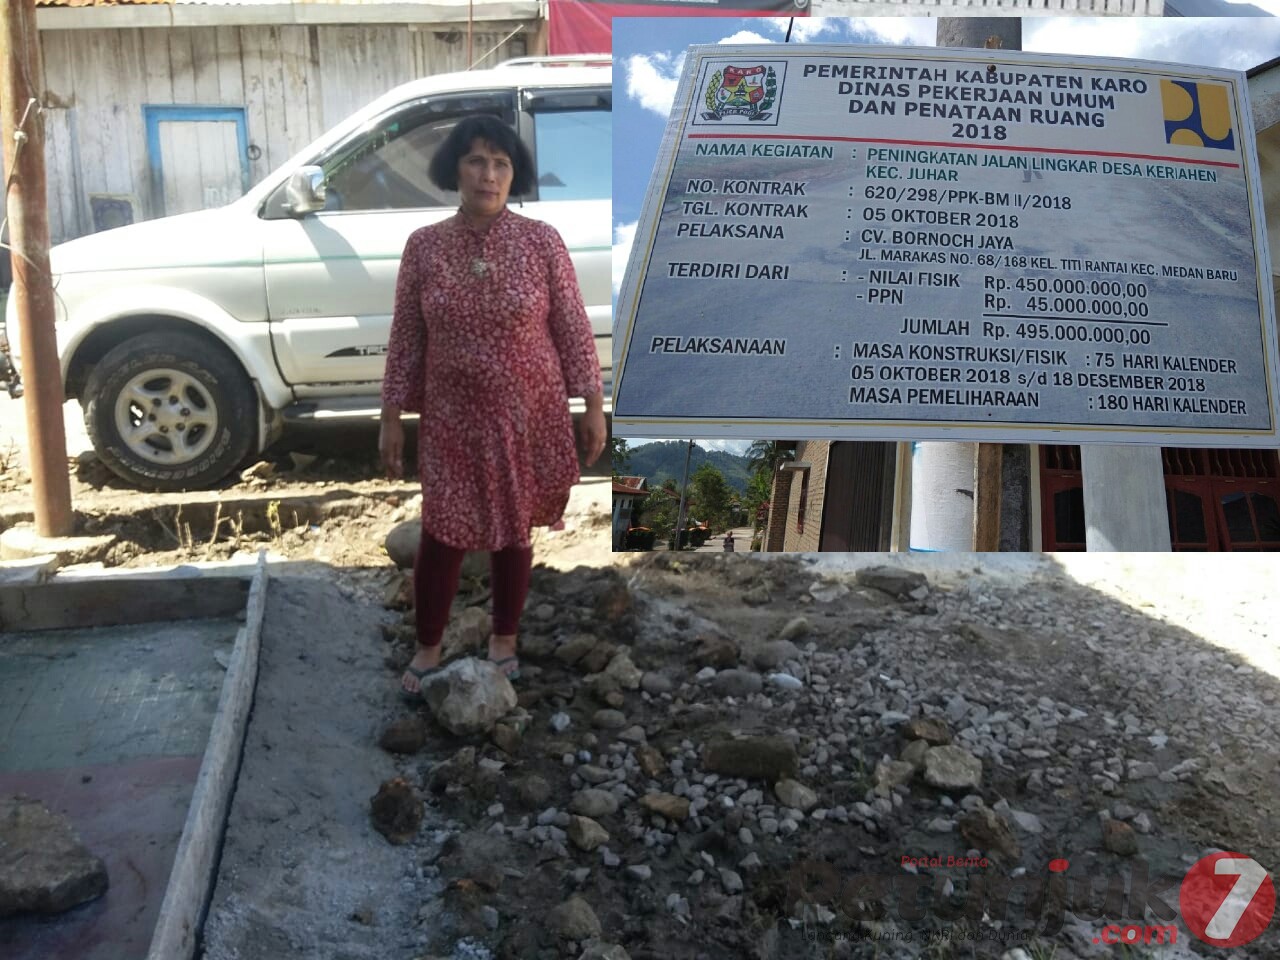 Rumahnya Kena Banjir, Warga Desa Keriahen Protes Terhadap Proyek Peningkatan Jalan Lingkar